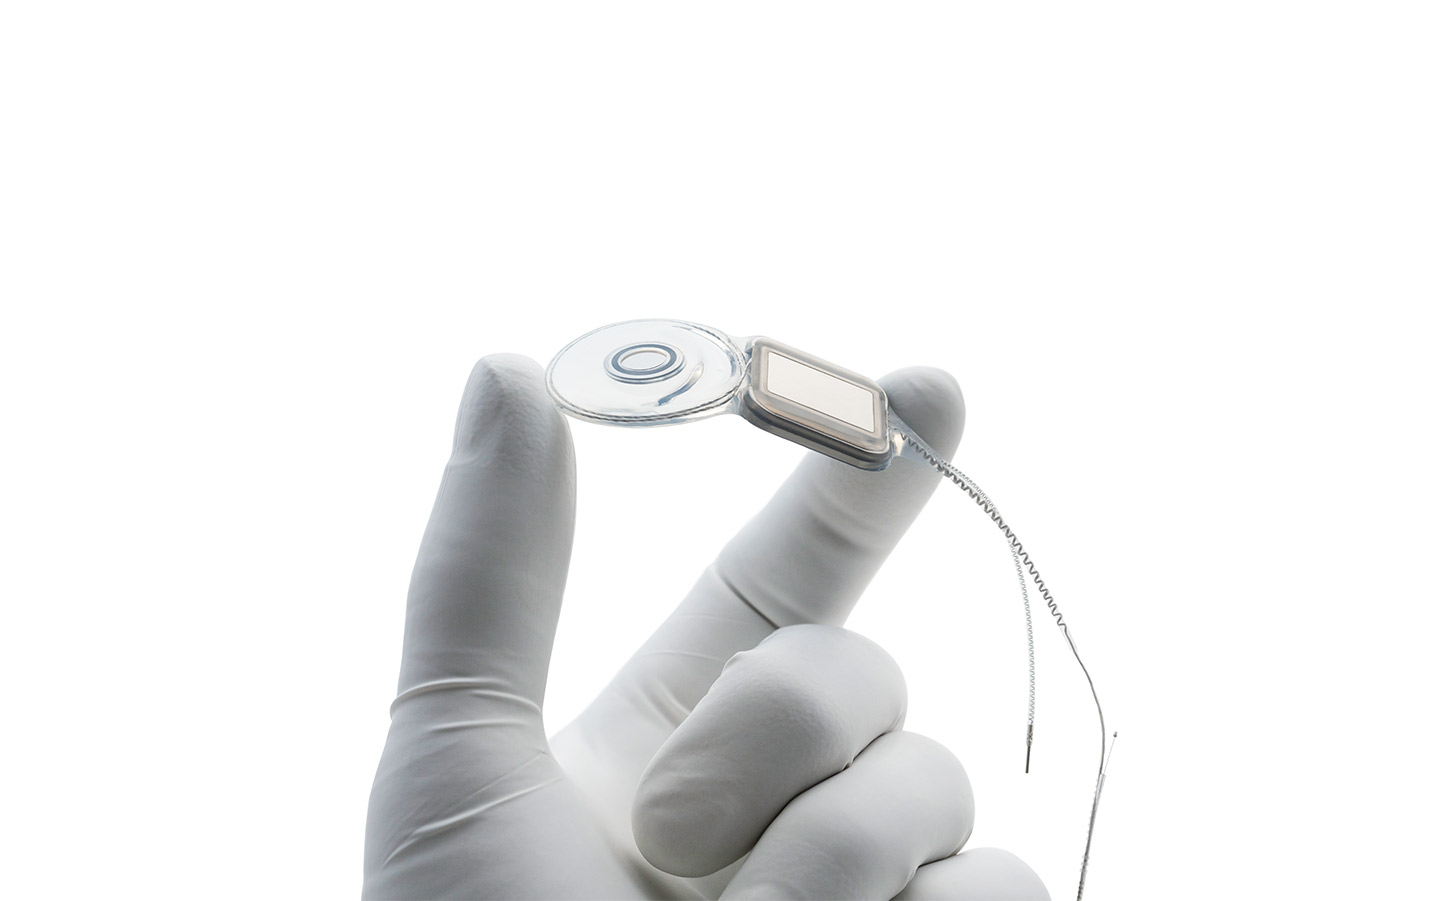 O mână de chirurg, cu mănușă de latex, ține un implant Nucleus